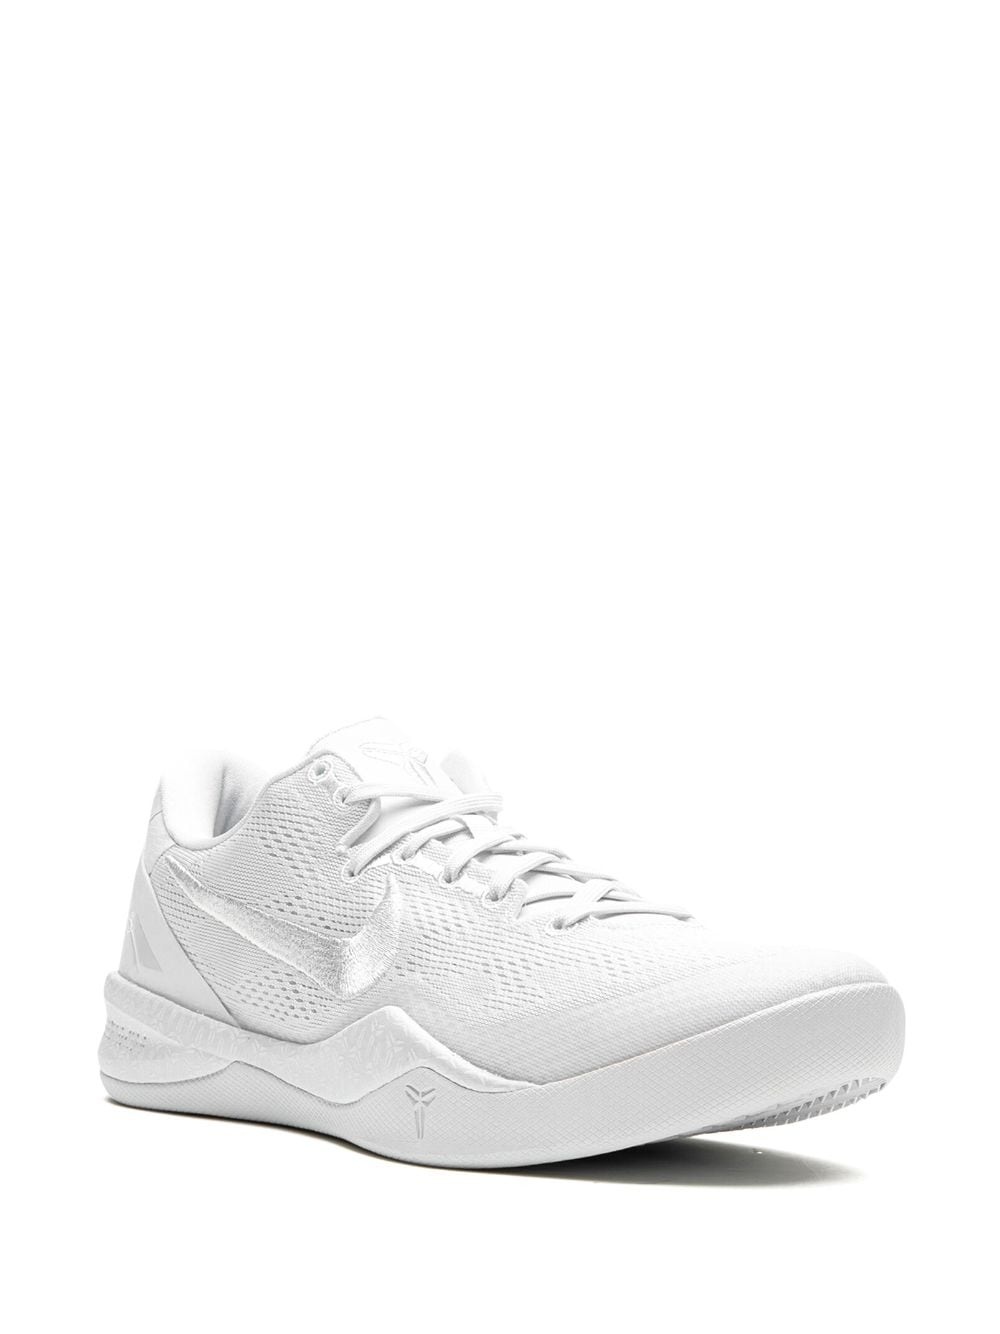 Kobe 8 Protro "Triple White" sneakers - 2